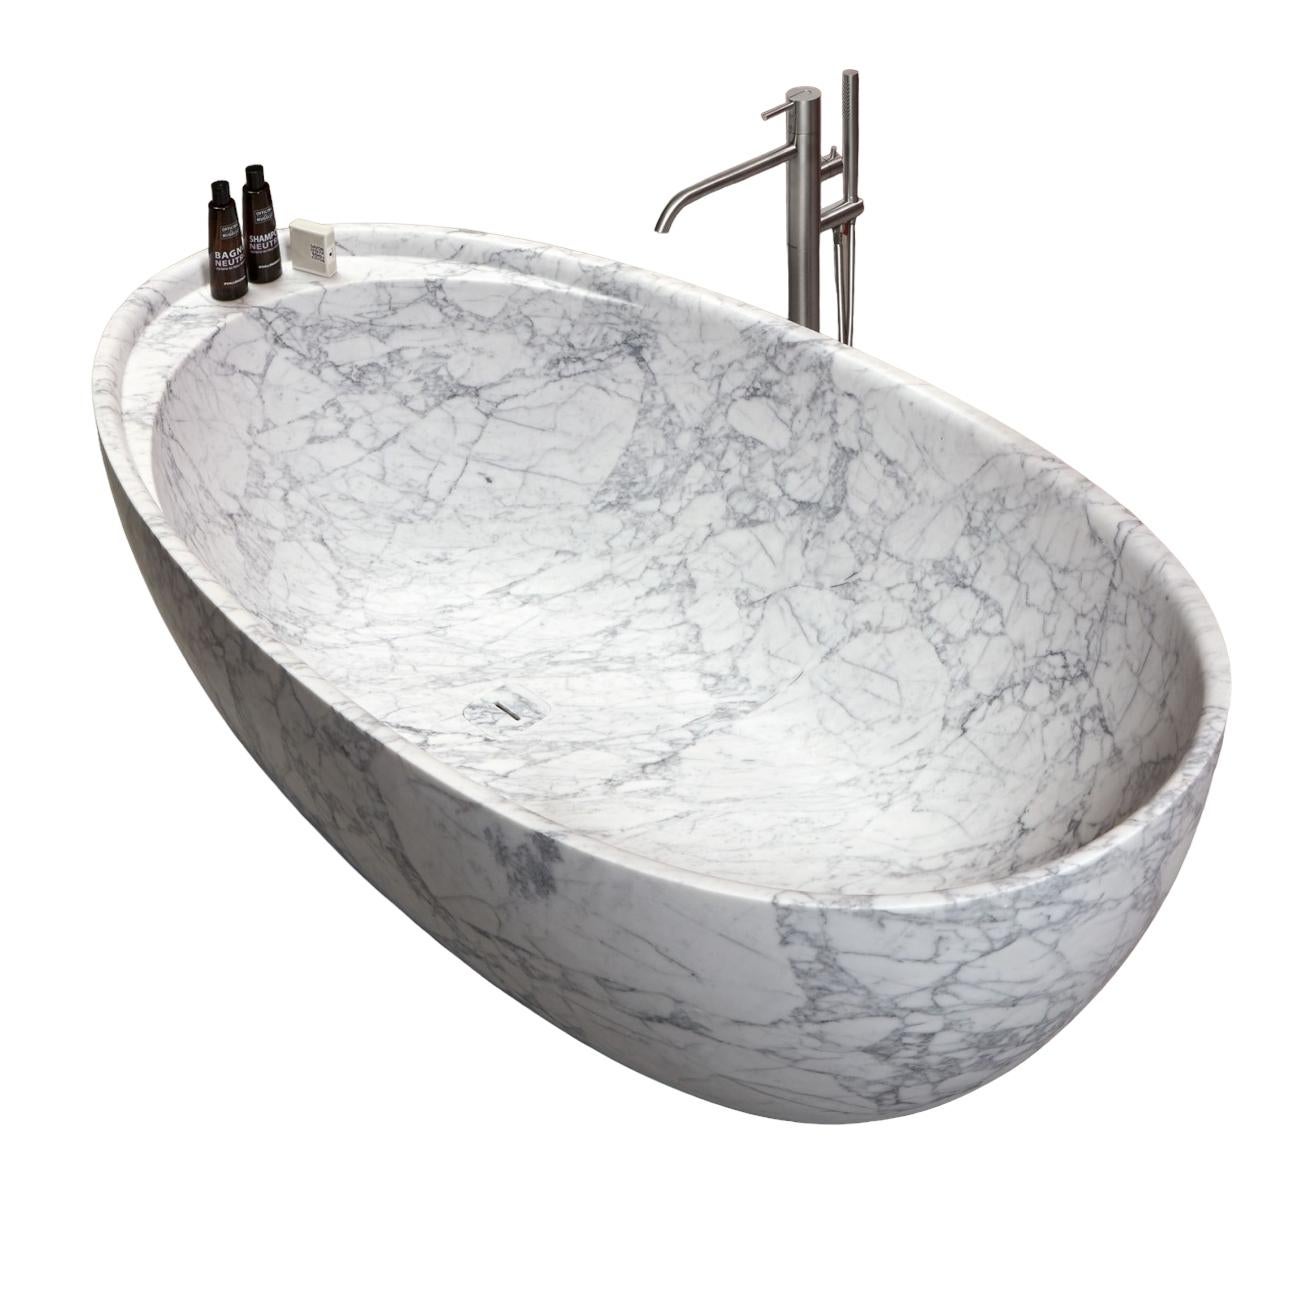 bath tubs for sale